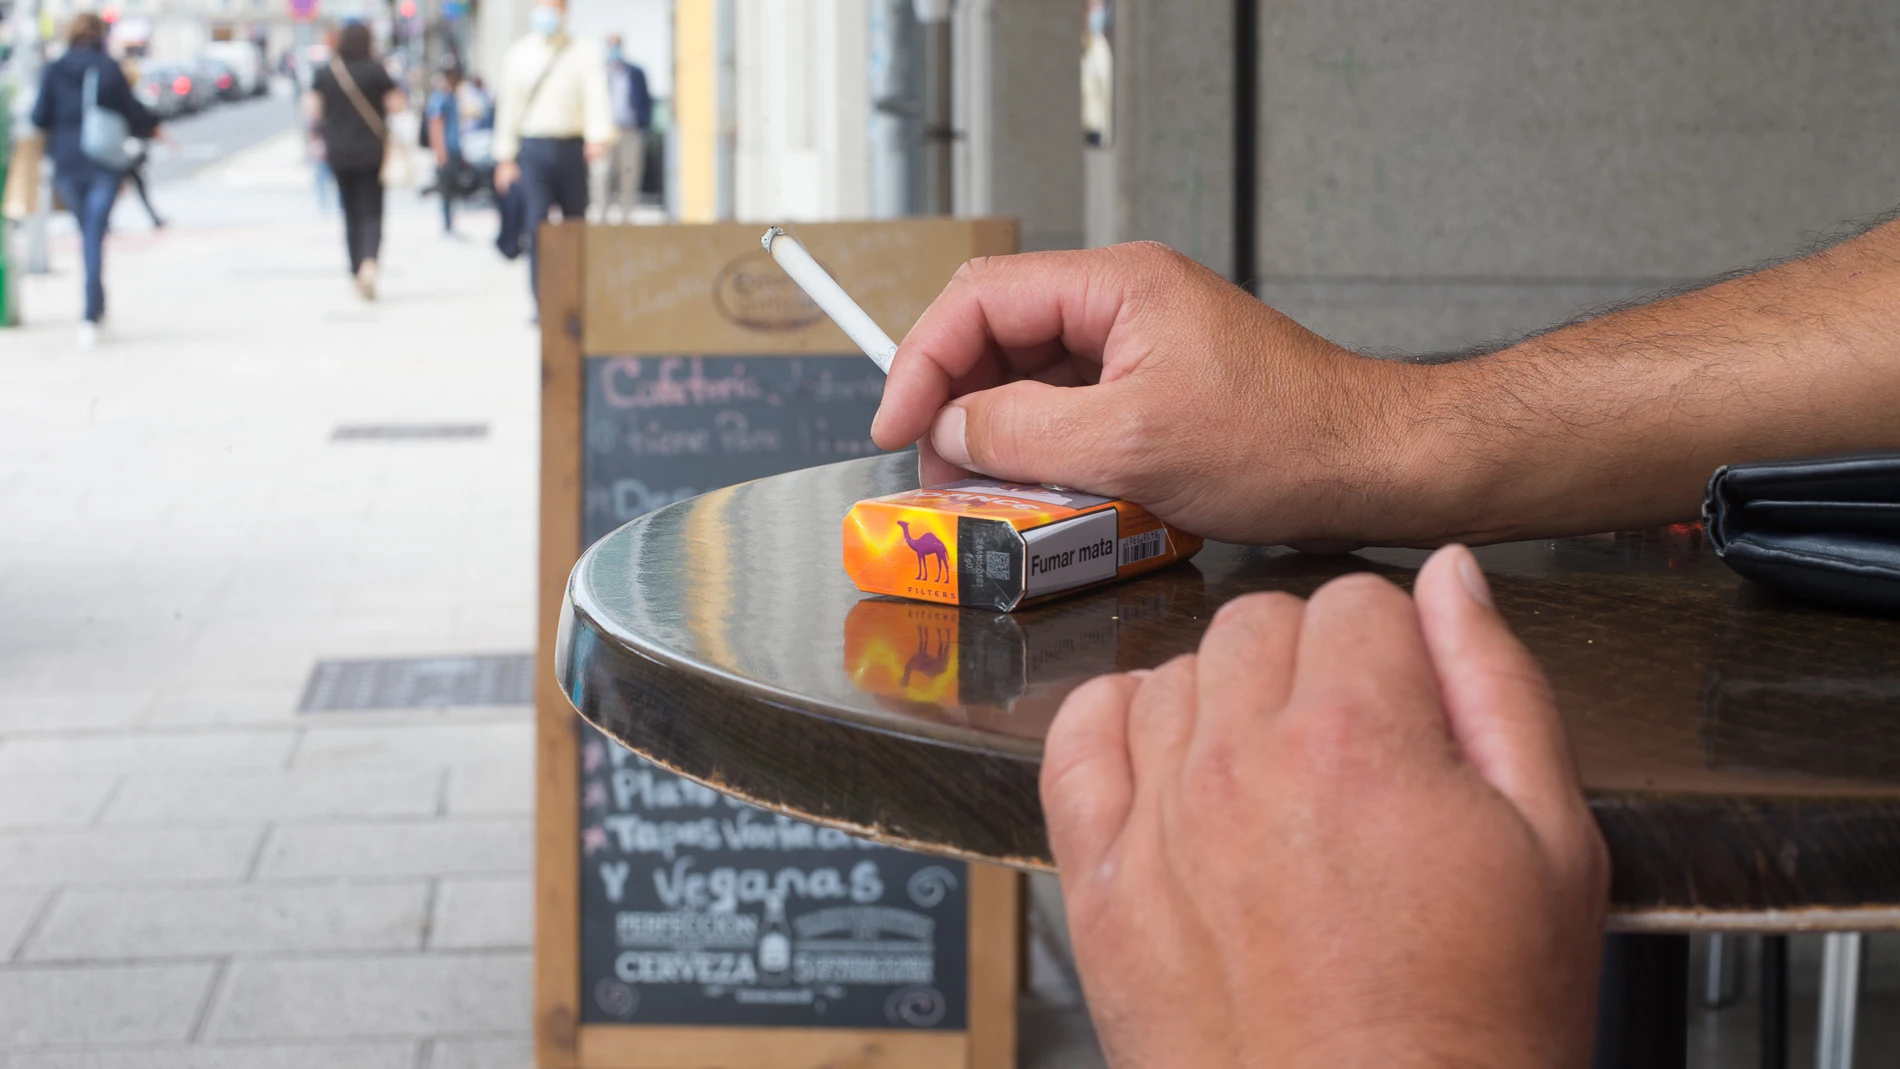 Galicia prohíbe fumar en la vía pública si no existe distancia de seguridad para evitar contagios de Covid-19